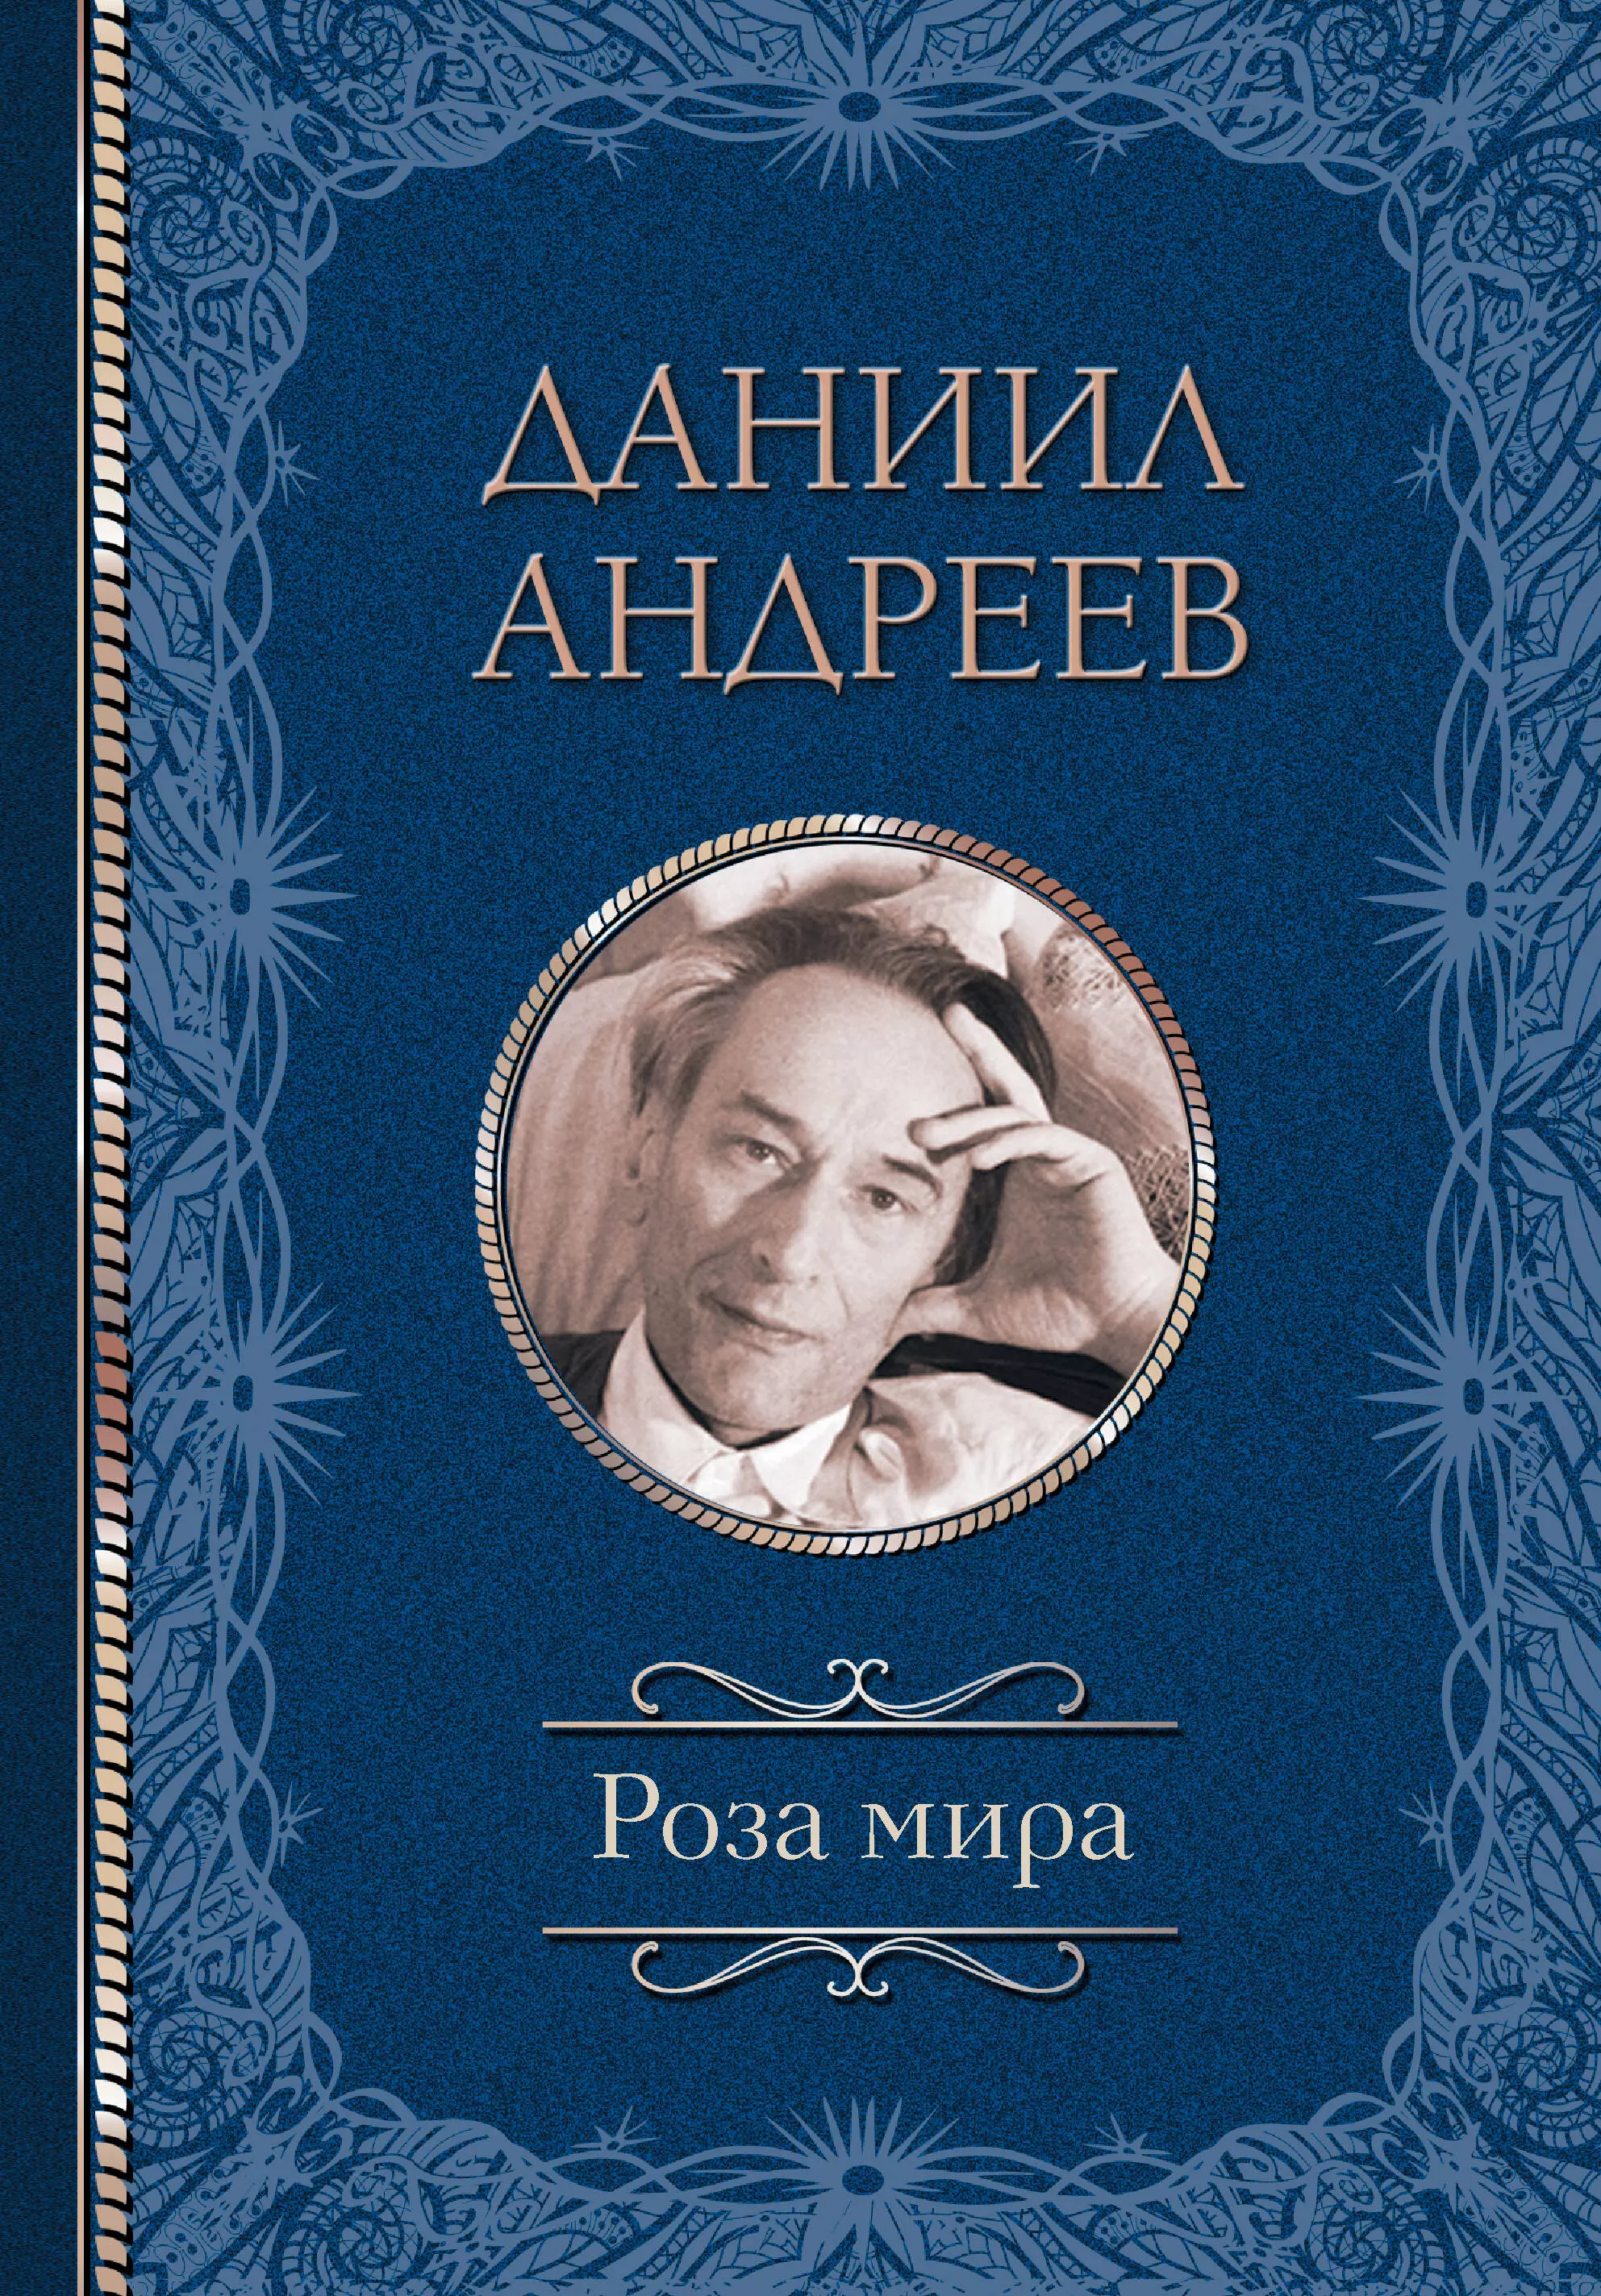 Андреев Даниил Леонидович - Роза мира